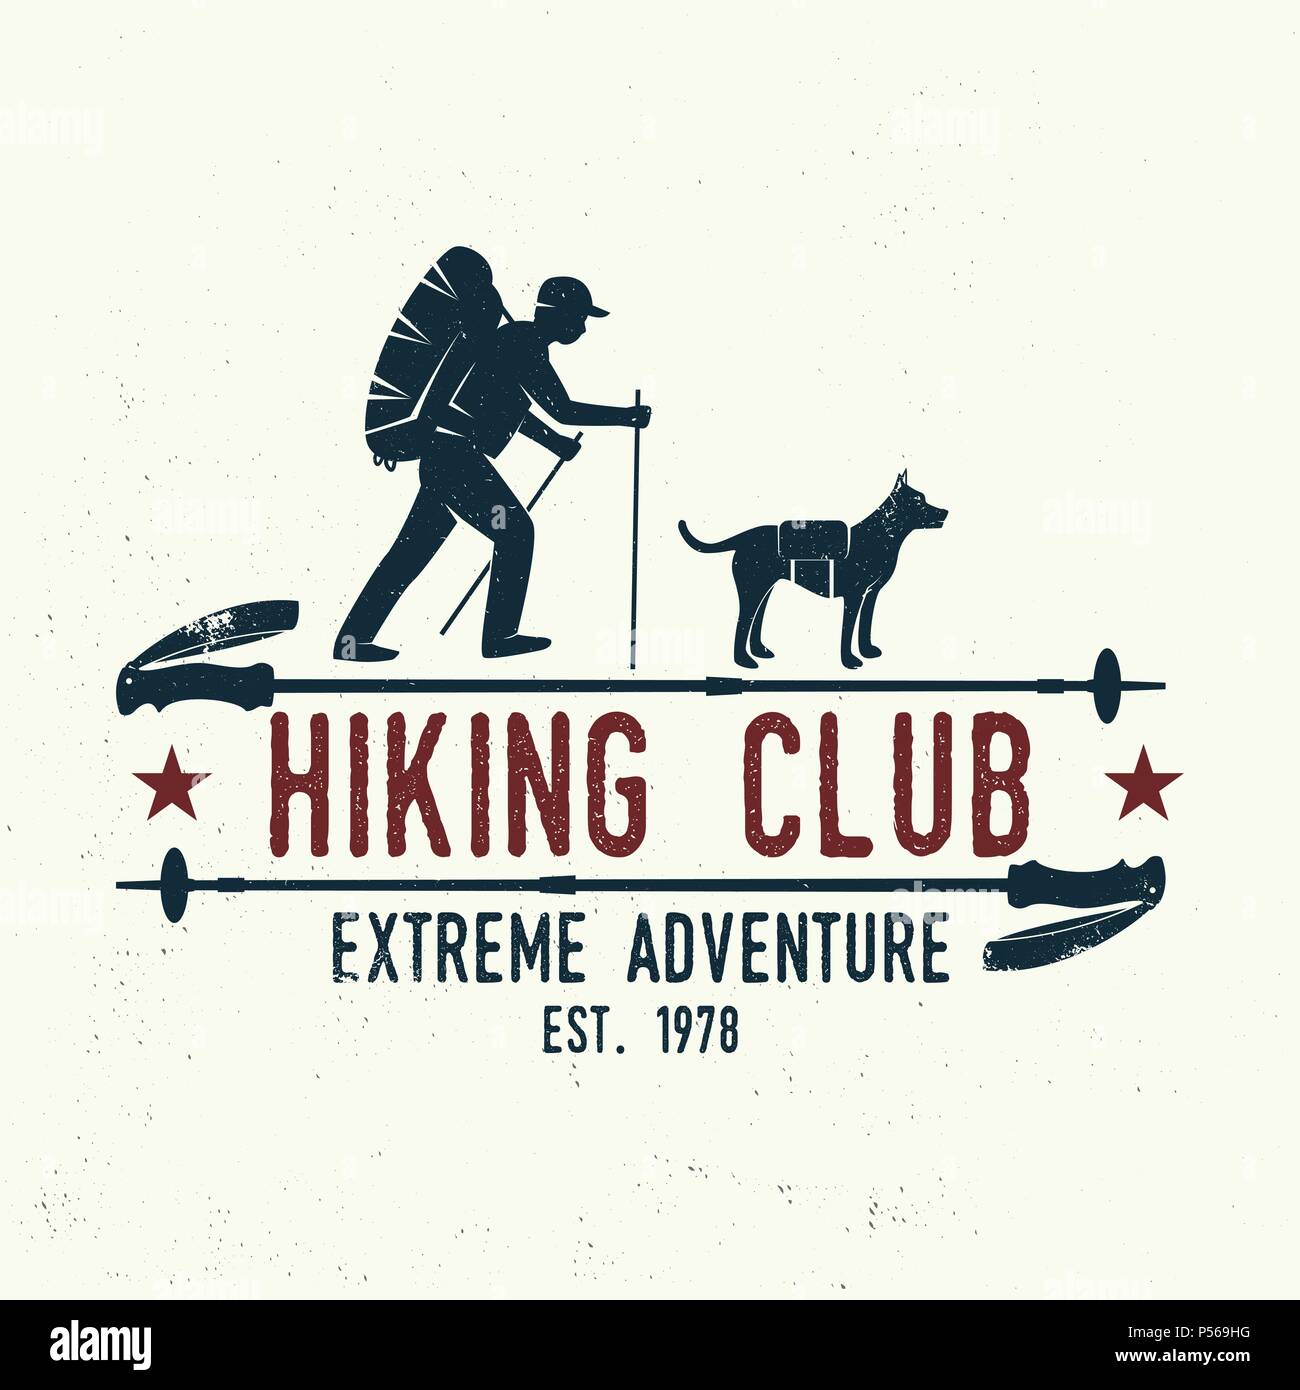 Wandern club extreme Abenteuer. Vector Illustration. Konzept für Hemd oder Logo, Print, Stempel. Design mit Wanderer, Hund und Wandern. Stock Vektor